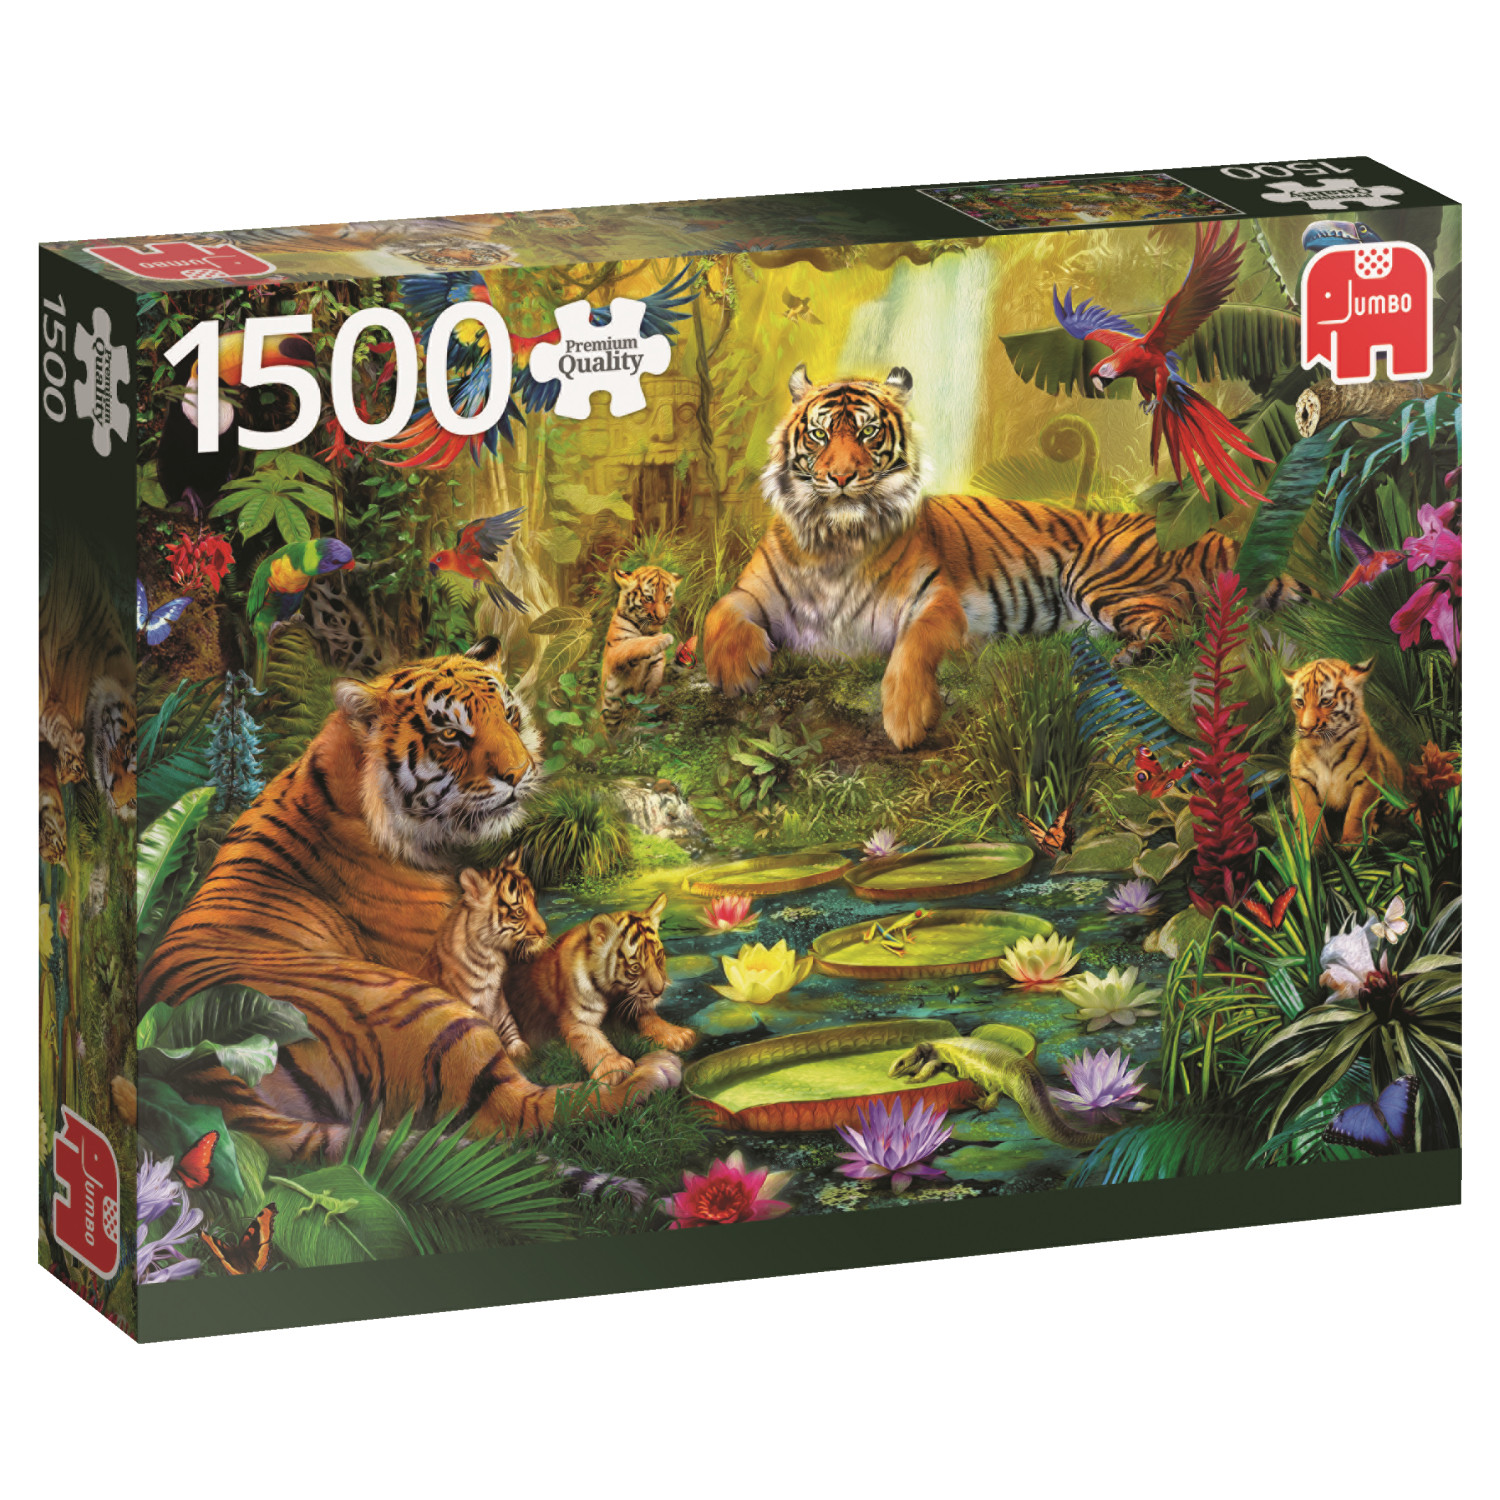 Jumbo 18525 Familia de tigres en la Jungla 1500 Piezas